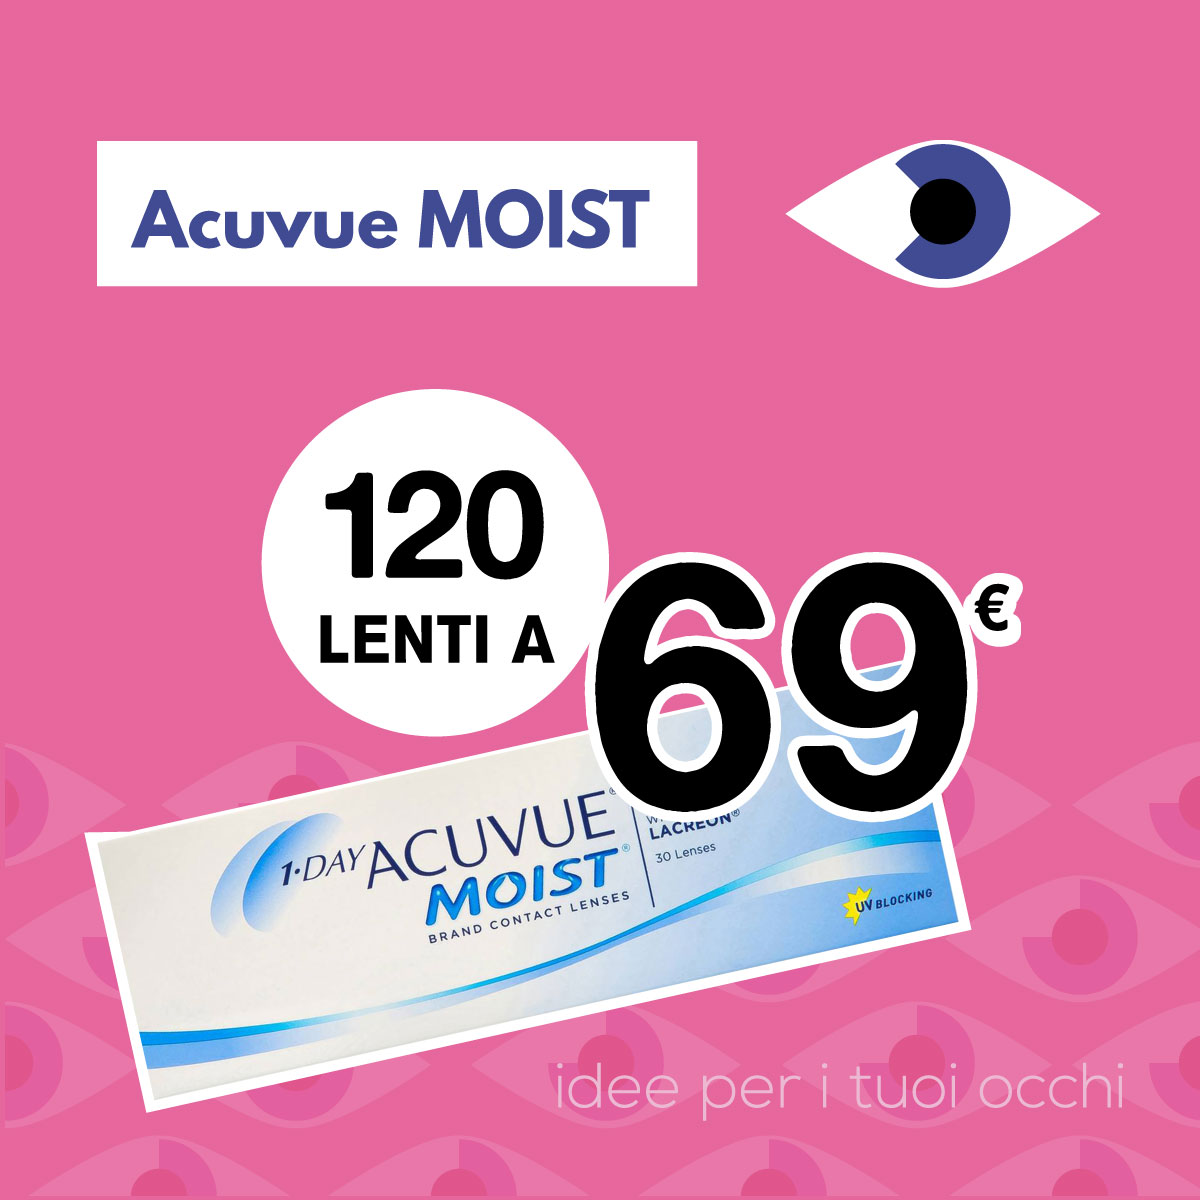 covid 19 - Lenti a contatto moist one day promozione centro ottico progettovista idee per i tuoi occhi